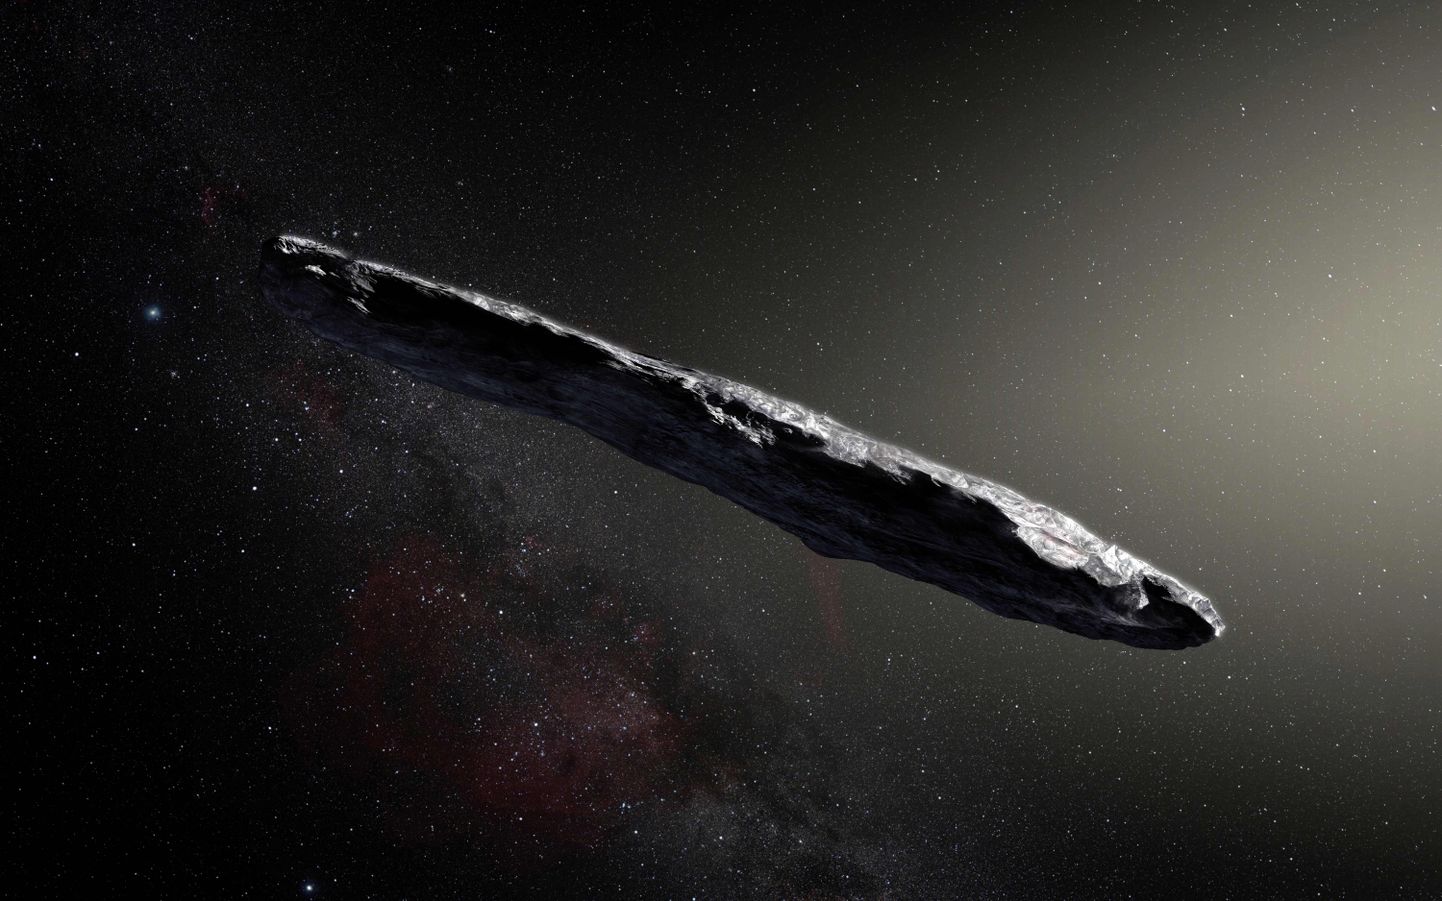 Euroopa Lõunaobservatooriumi kunstniku arvutijoonistus tähtedevahelisest objektist Oumuamuast